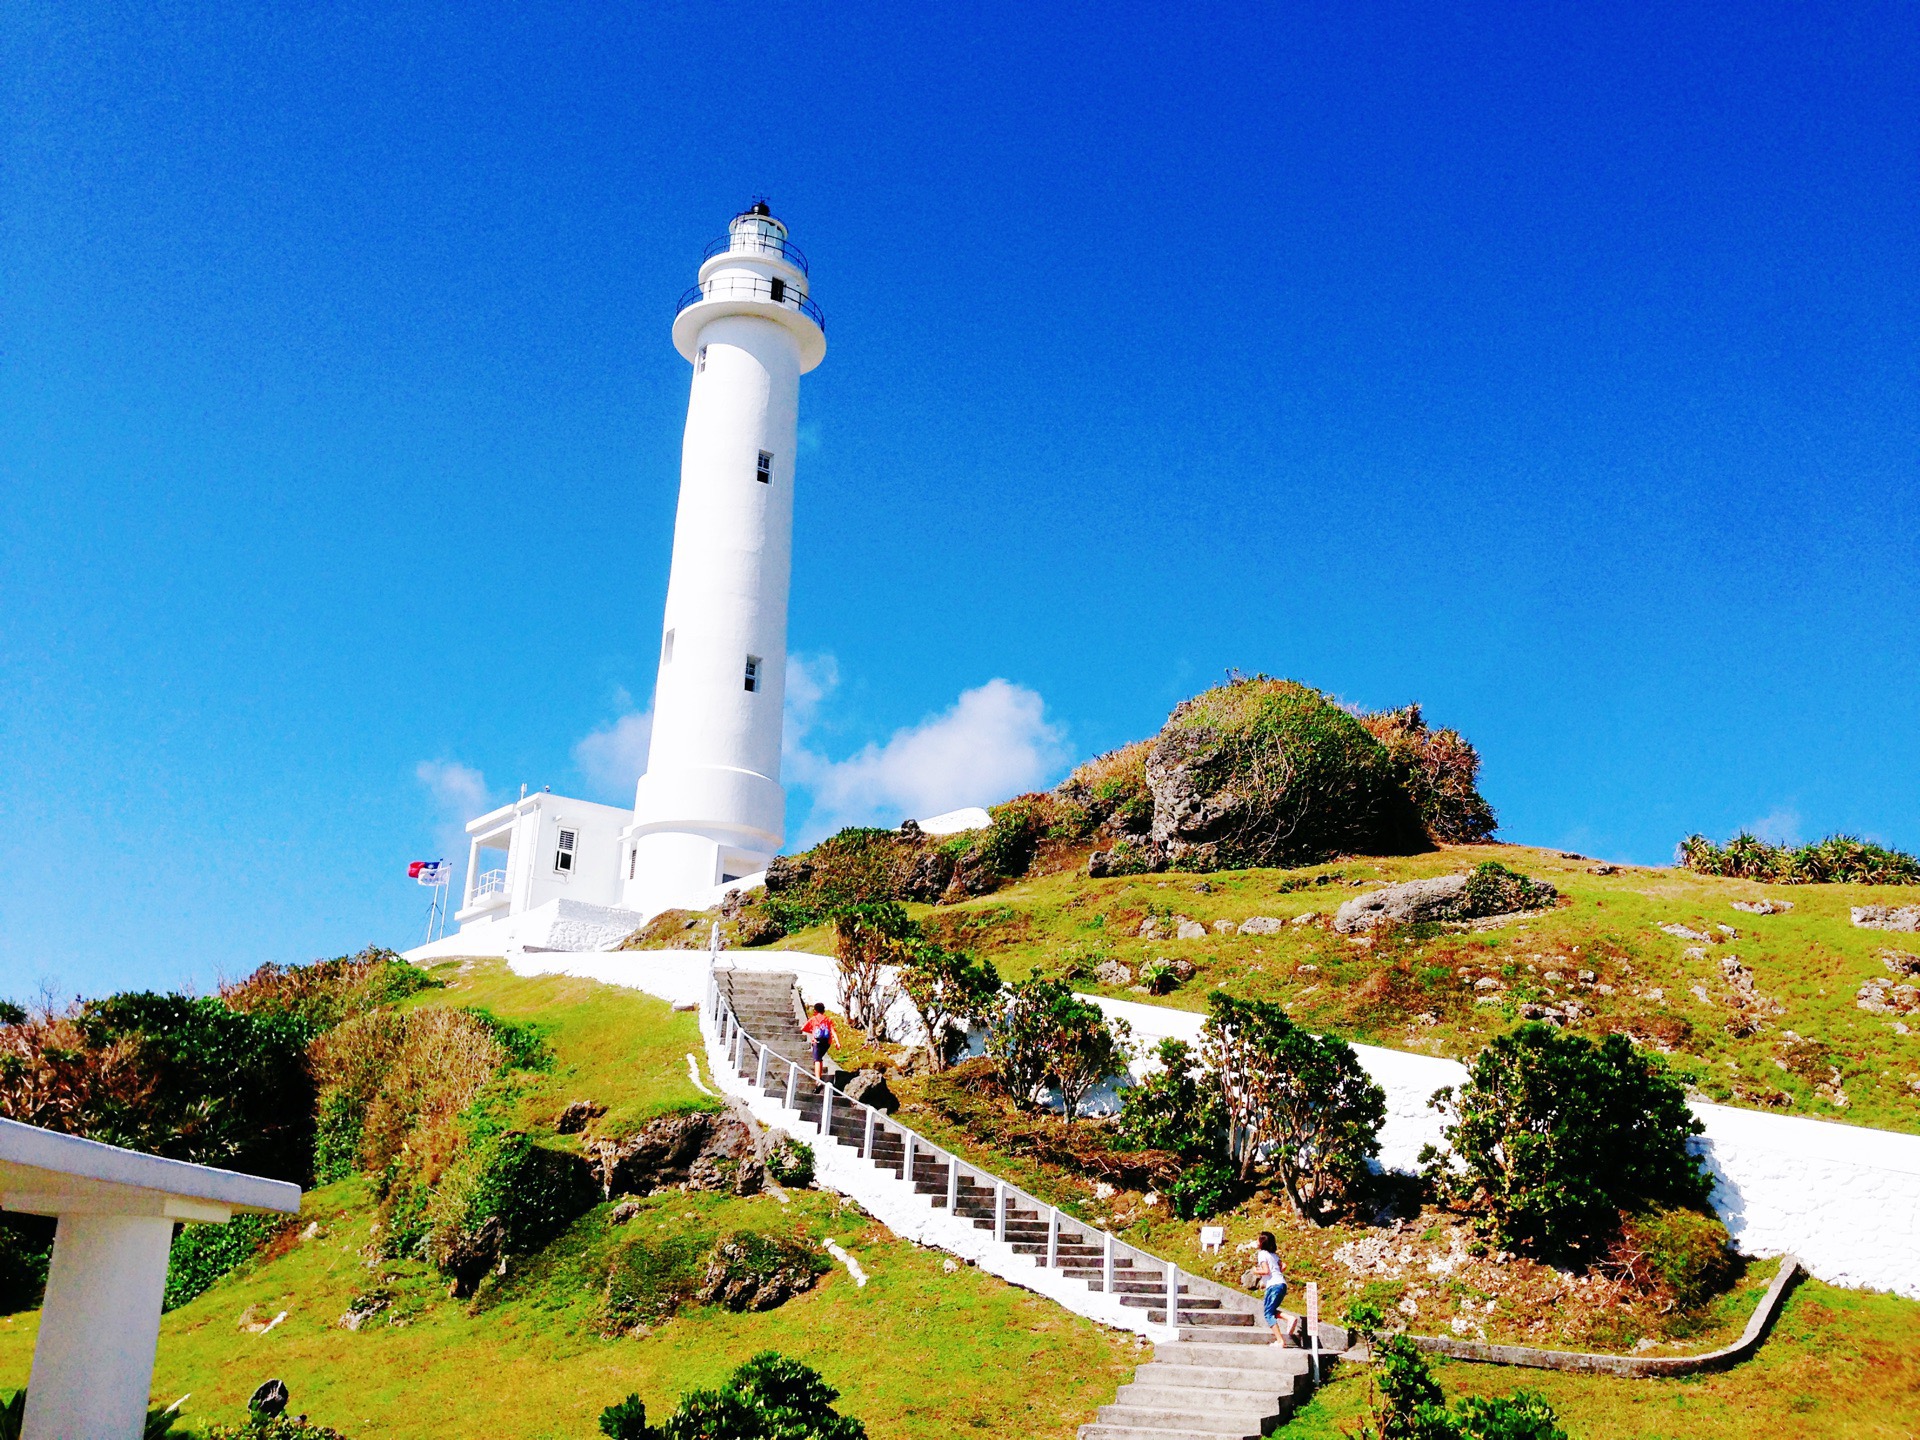 来到绿岛一定要到台湾最壮观的灯塔留下美好回忆